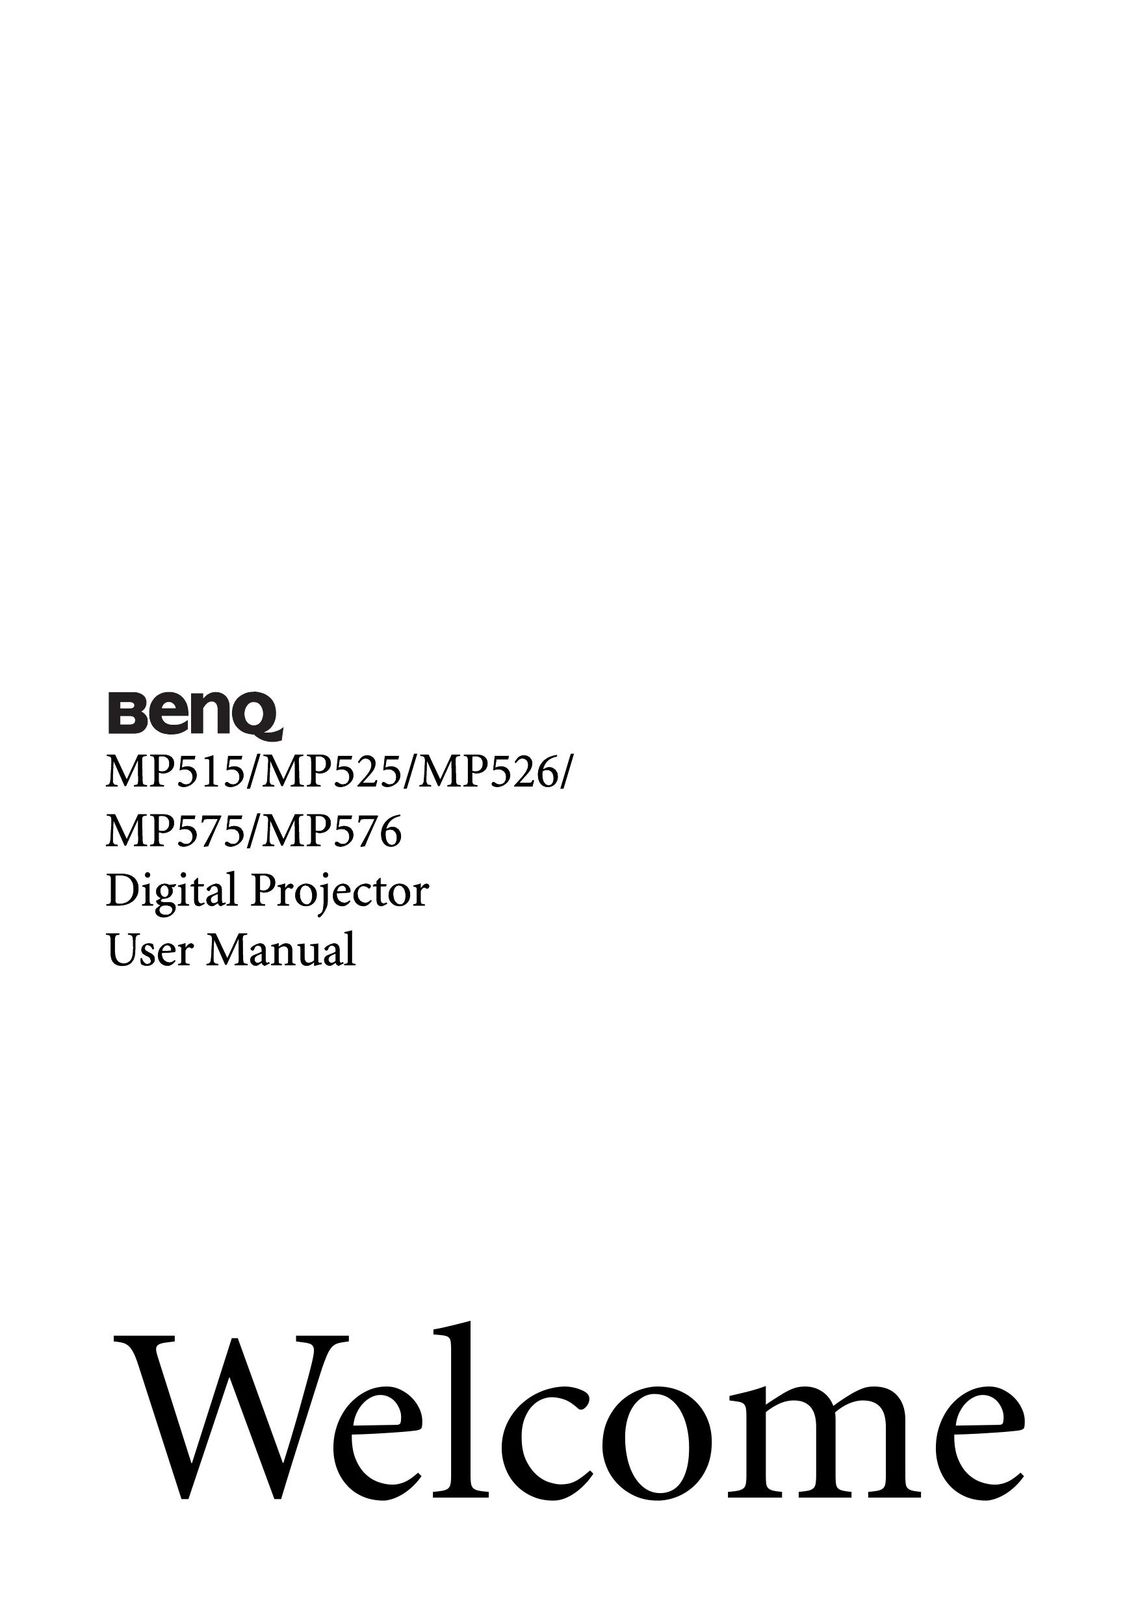 BenQ MP526 Projector User Manual